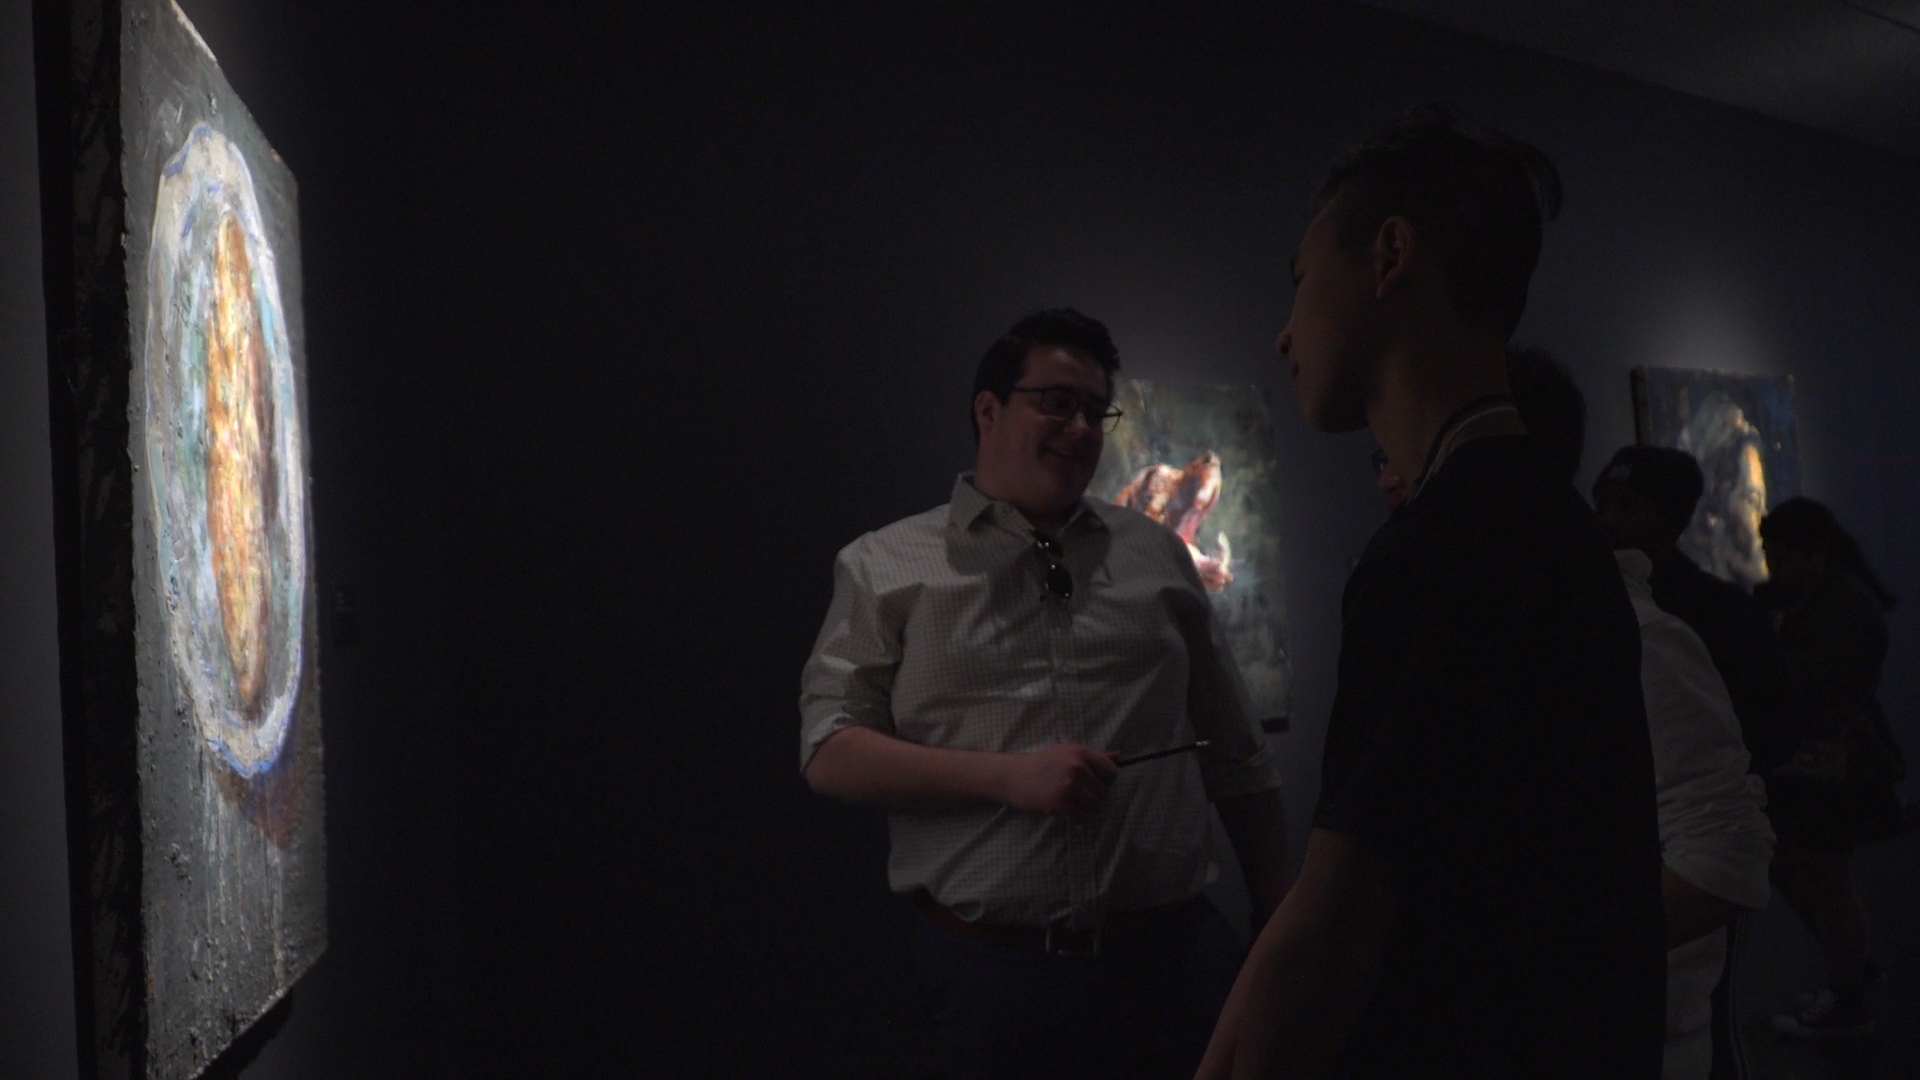 Alexander Morin et Troy Cheah en discussion sur les oeuvres de l’exposition devant une toile de Tony Scherman.